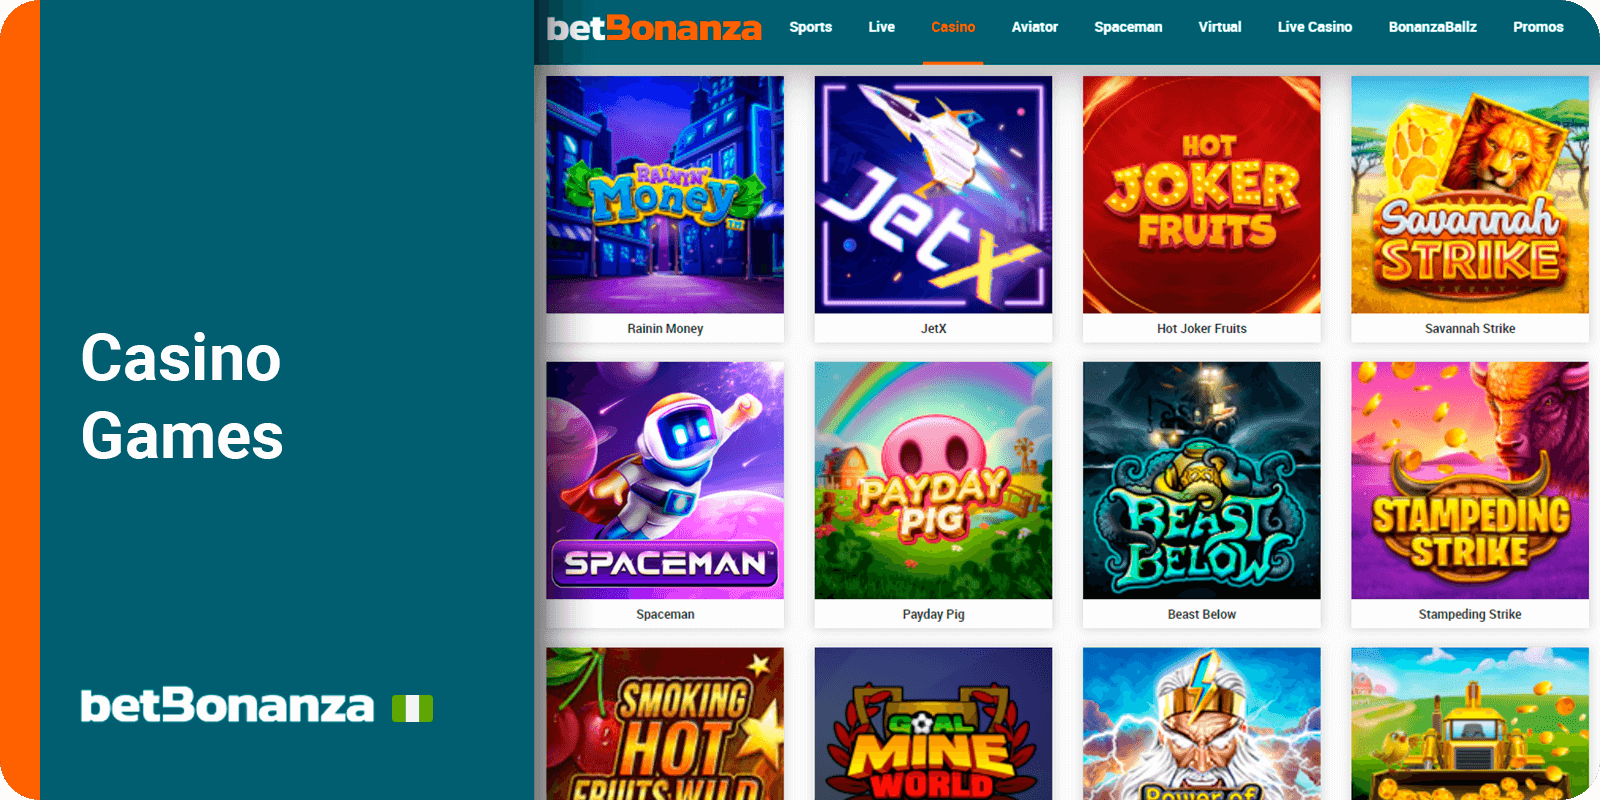 Casino Games at BetBonanza